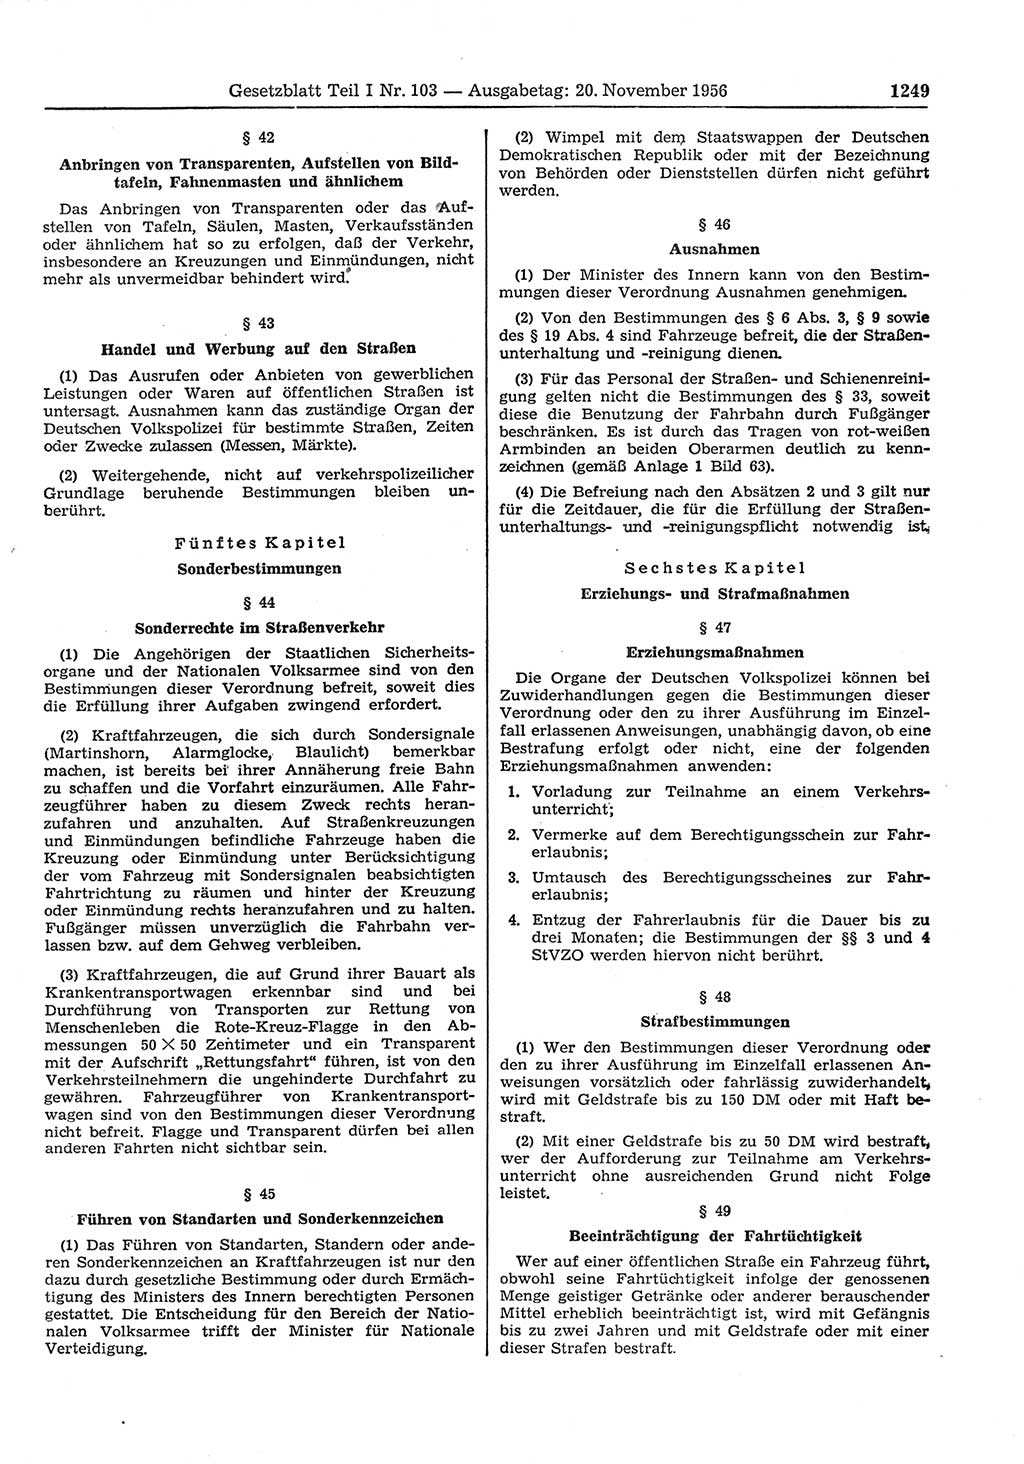 Gesetzblatt (GBl.) der Deutschen Demokratischen Republik (DDR) Teil Ⅰ 1956, Seite 1249 (GBl. DDR Ⅰ 1956, S. 1249)